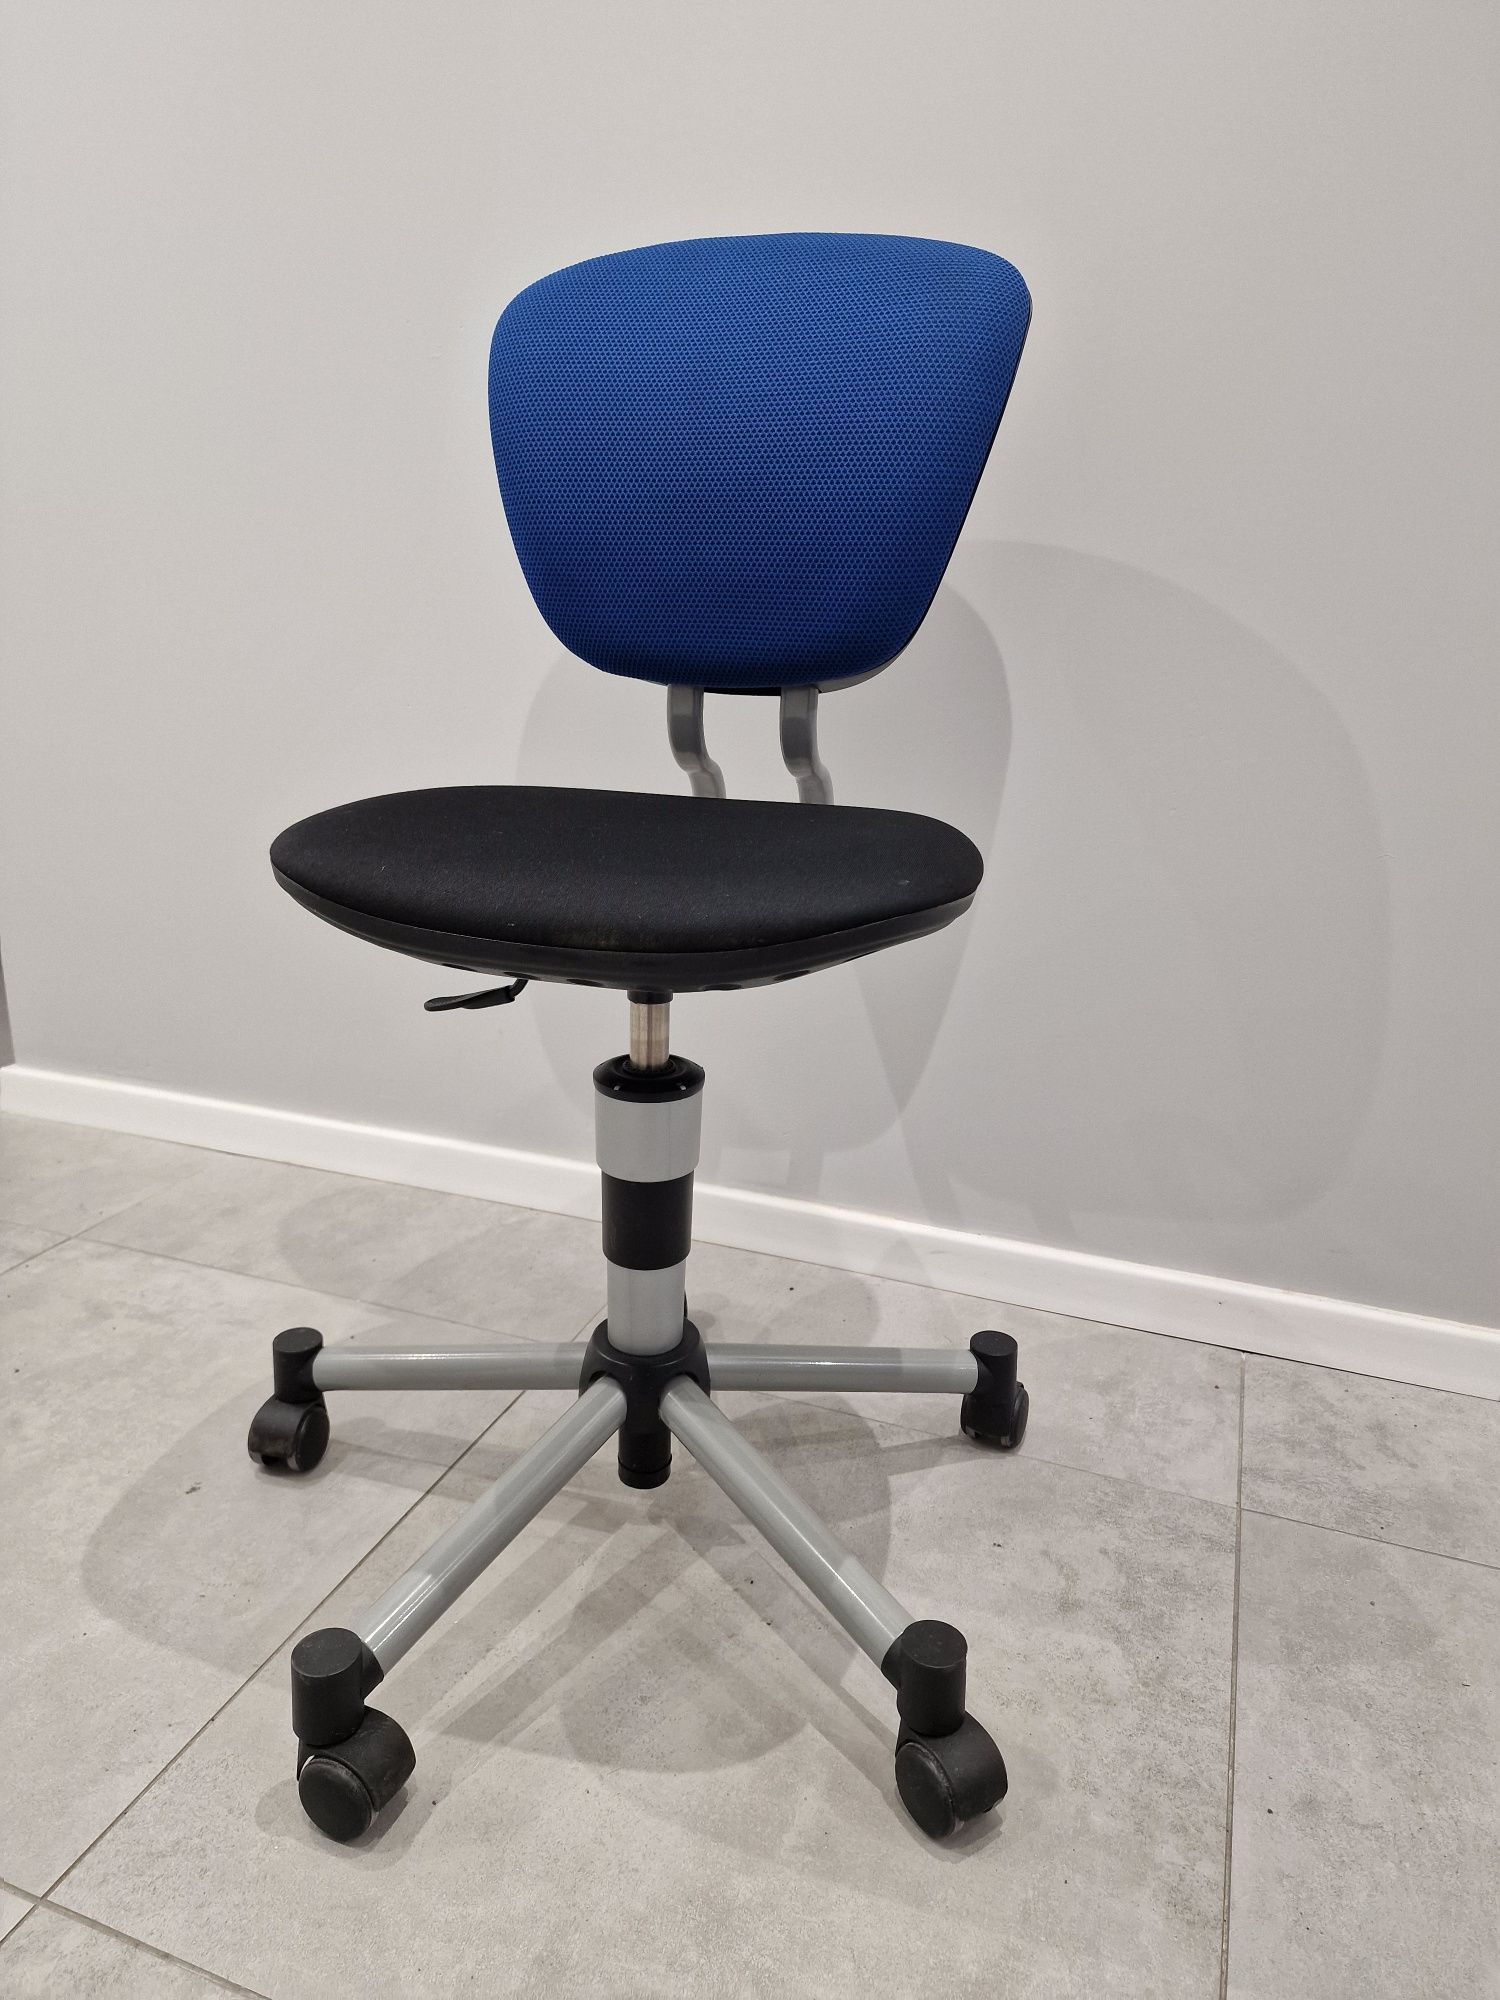 Krzesło biurkowe obrotowe solidne niemiecki producent